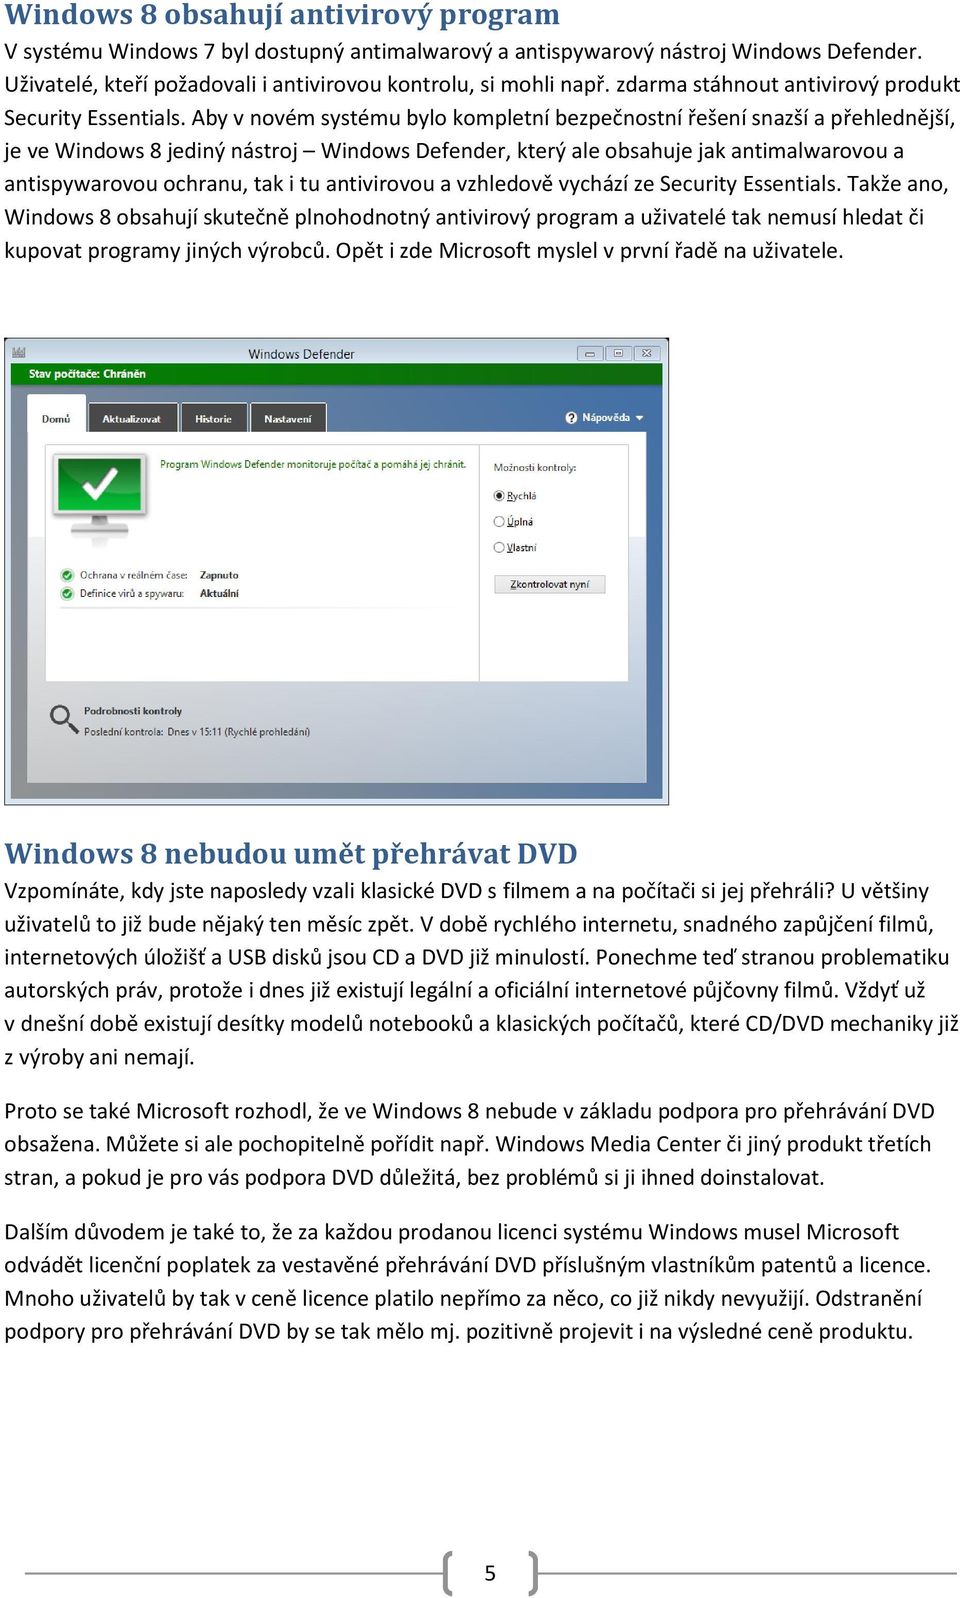 Aby v novém systému bylo kompletní bezpečnostní řešení snazší a přehlednější, je ve Windows 8 jediný nástroj Windows Defender, který ale obsahuje jak antimalwarovou a antispywarovou ochranu, tak i tu